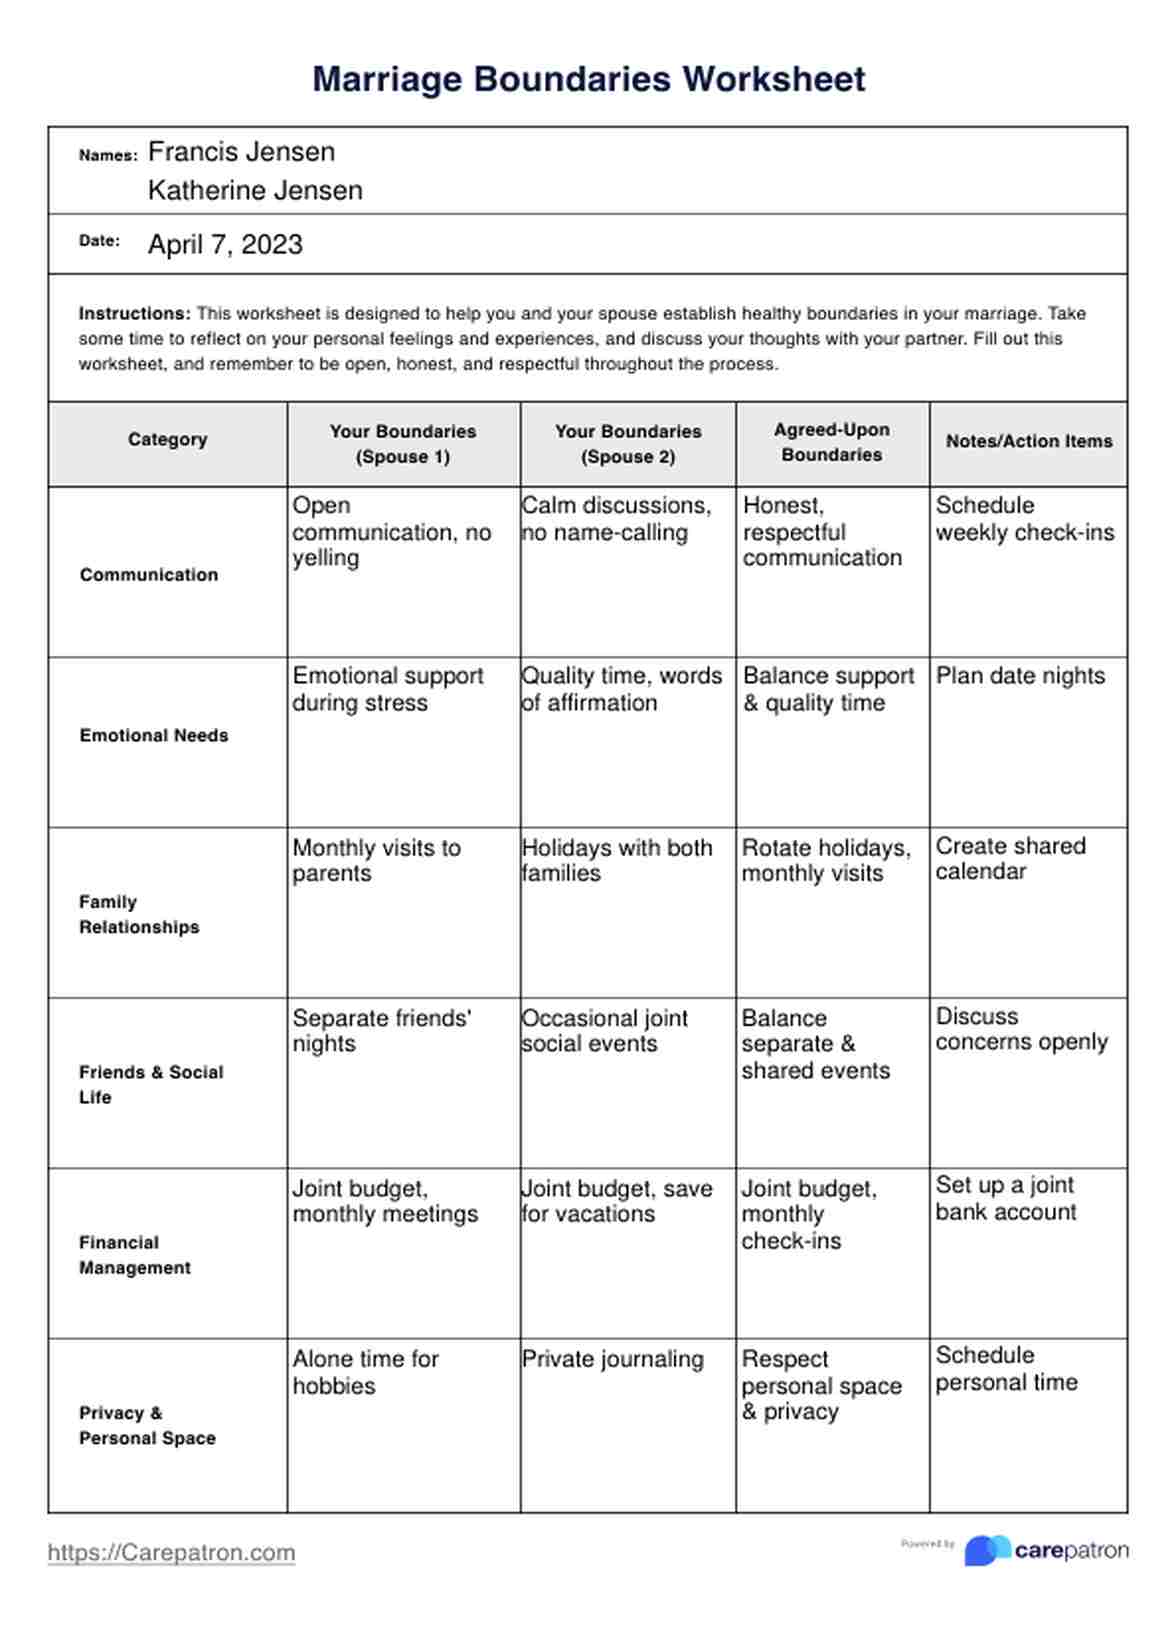 Marriage Boundaries Worksheet PDF Example